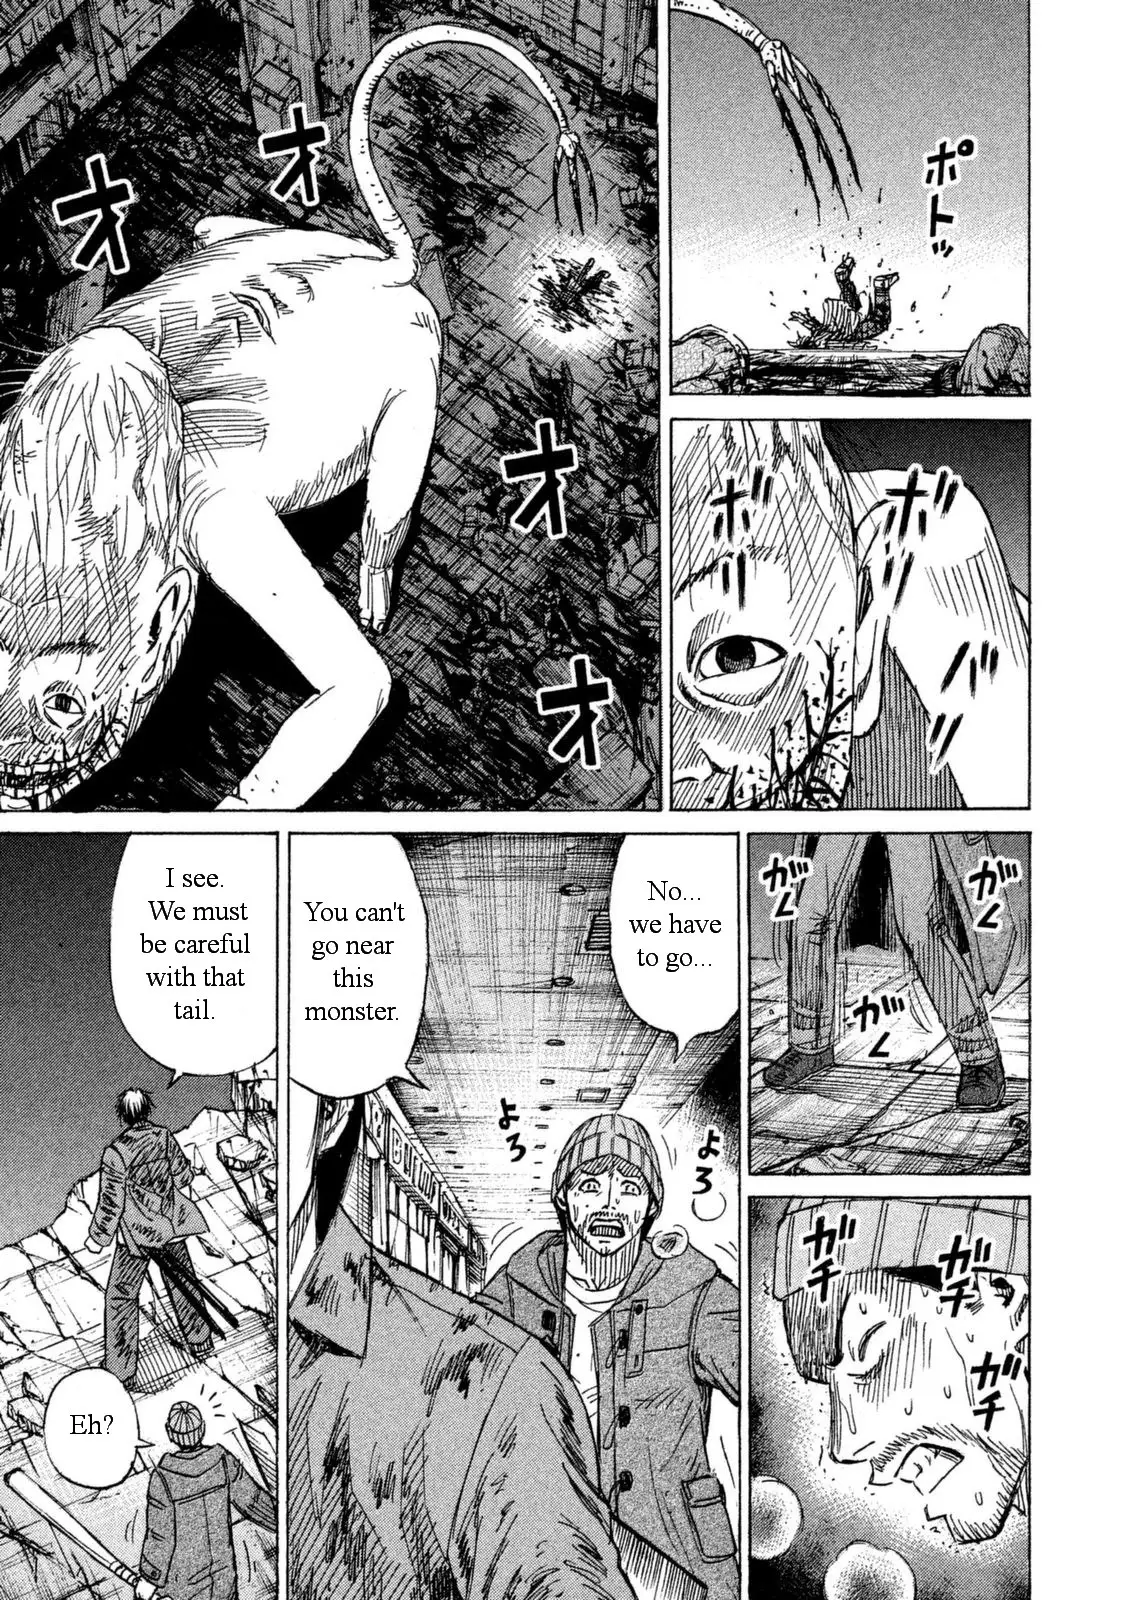 Higanjima - 48 Days Later - 8 page 15-75cca7ce